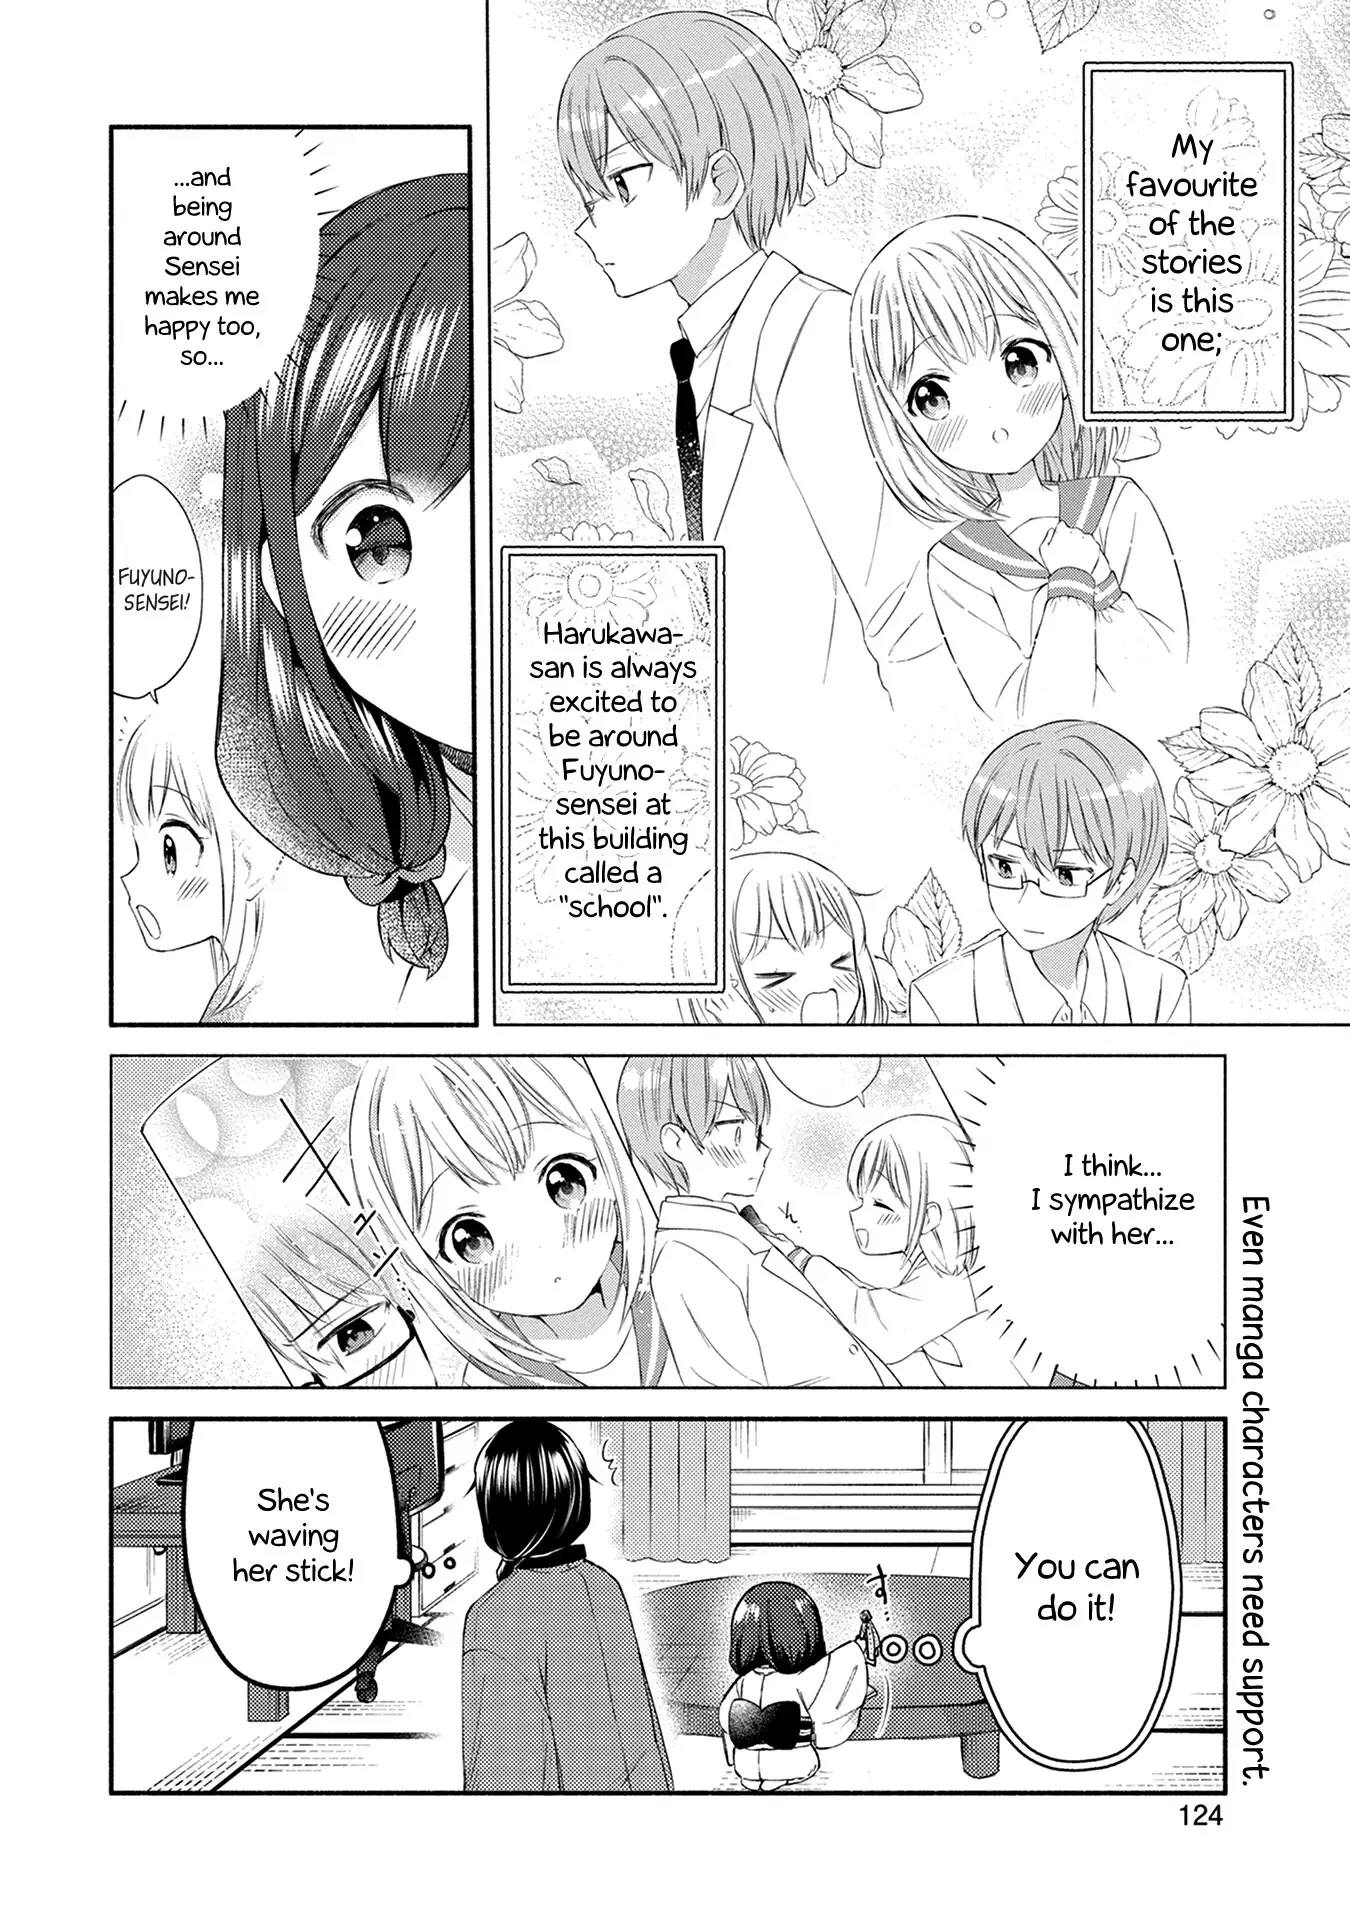 Mangaka-Sensei To Zashiki Warashi - 15 page 6-73aaa2e6